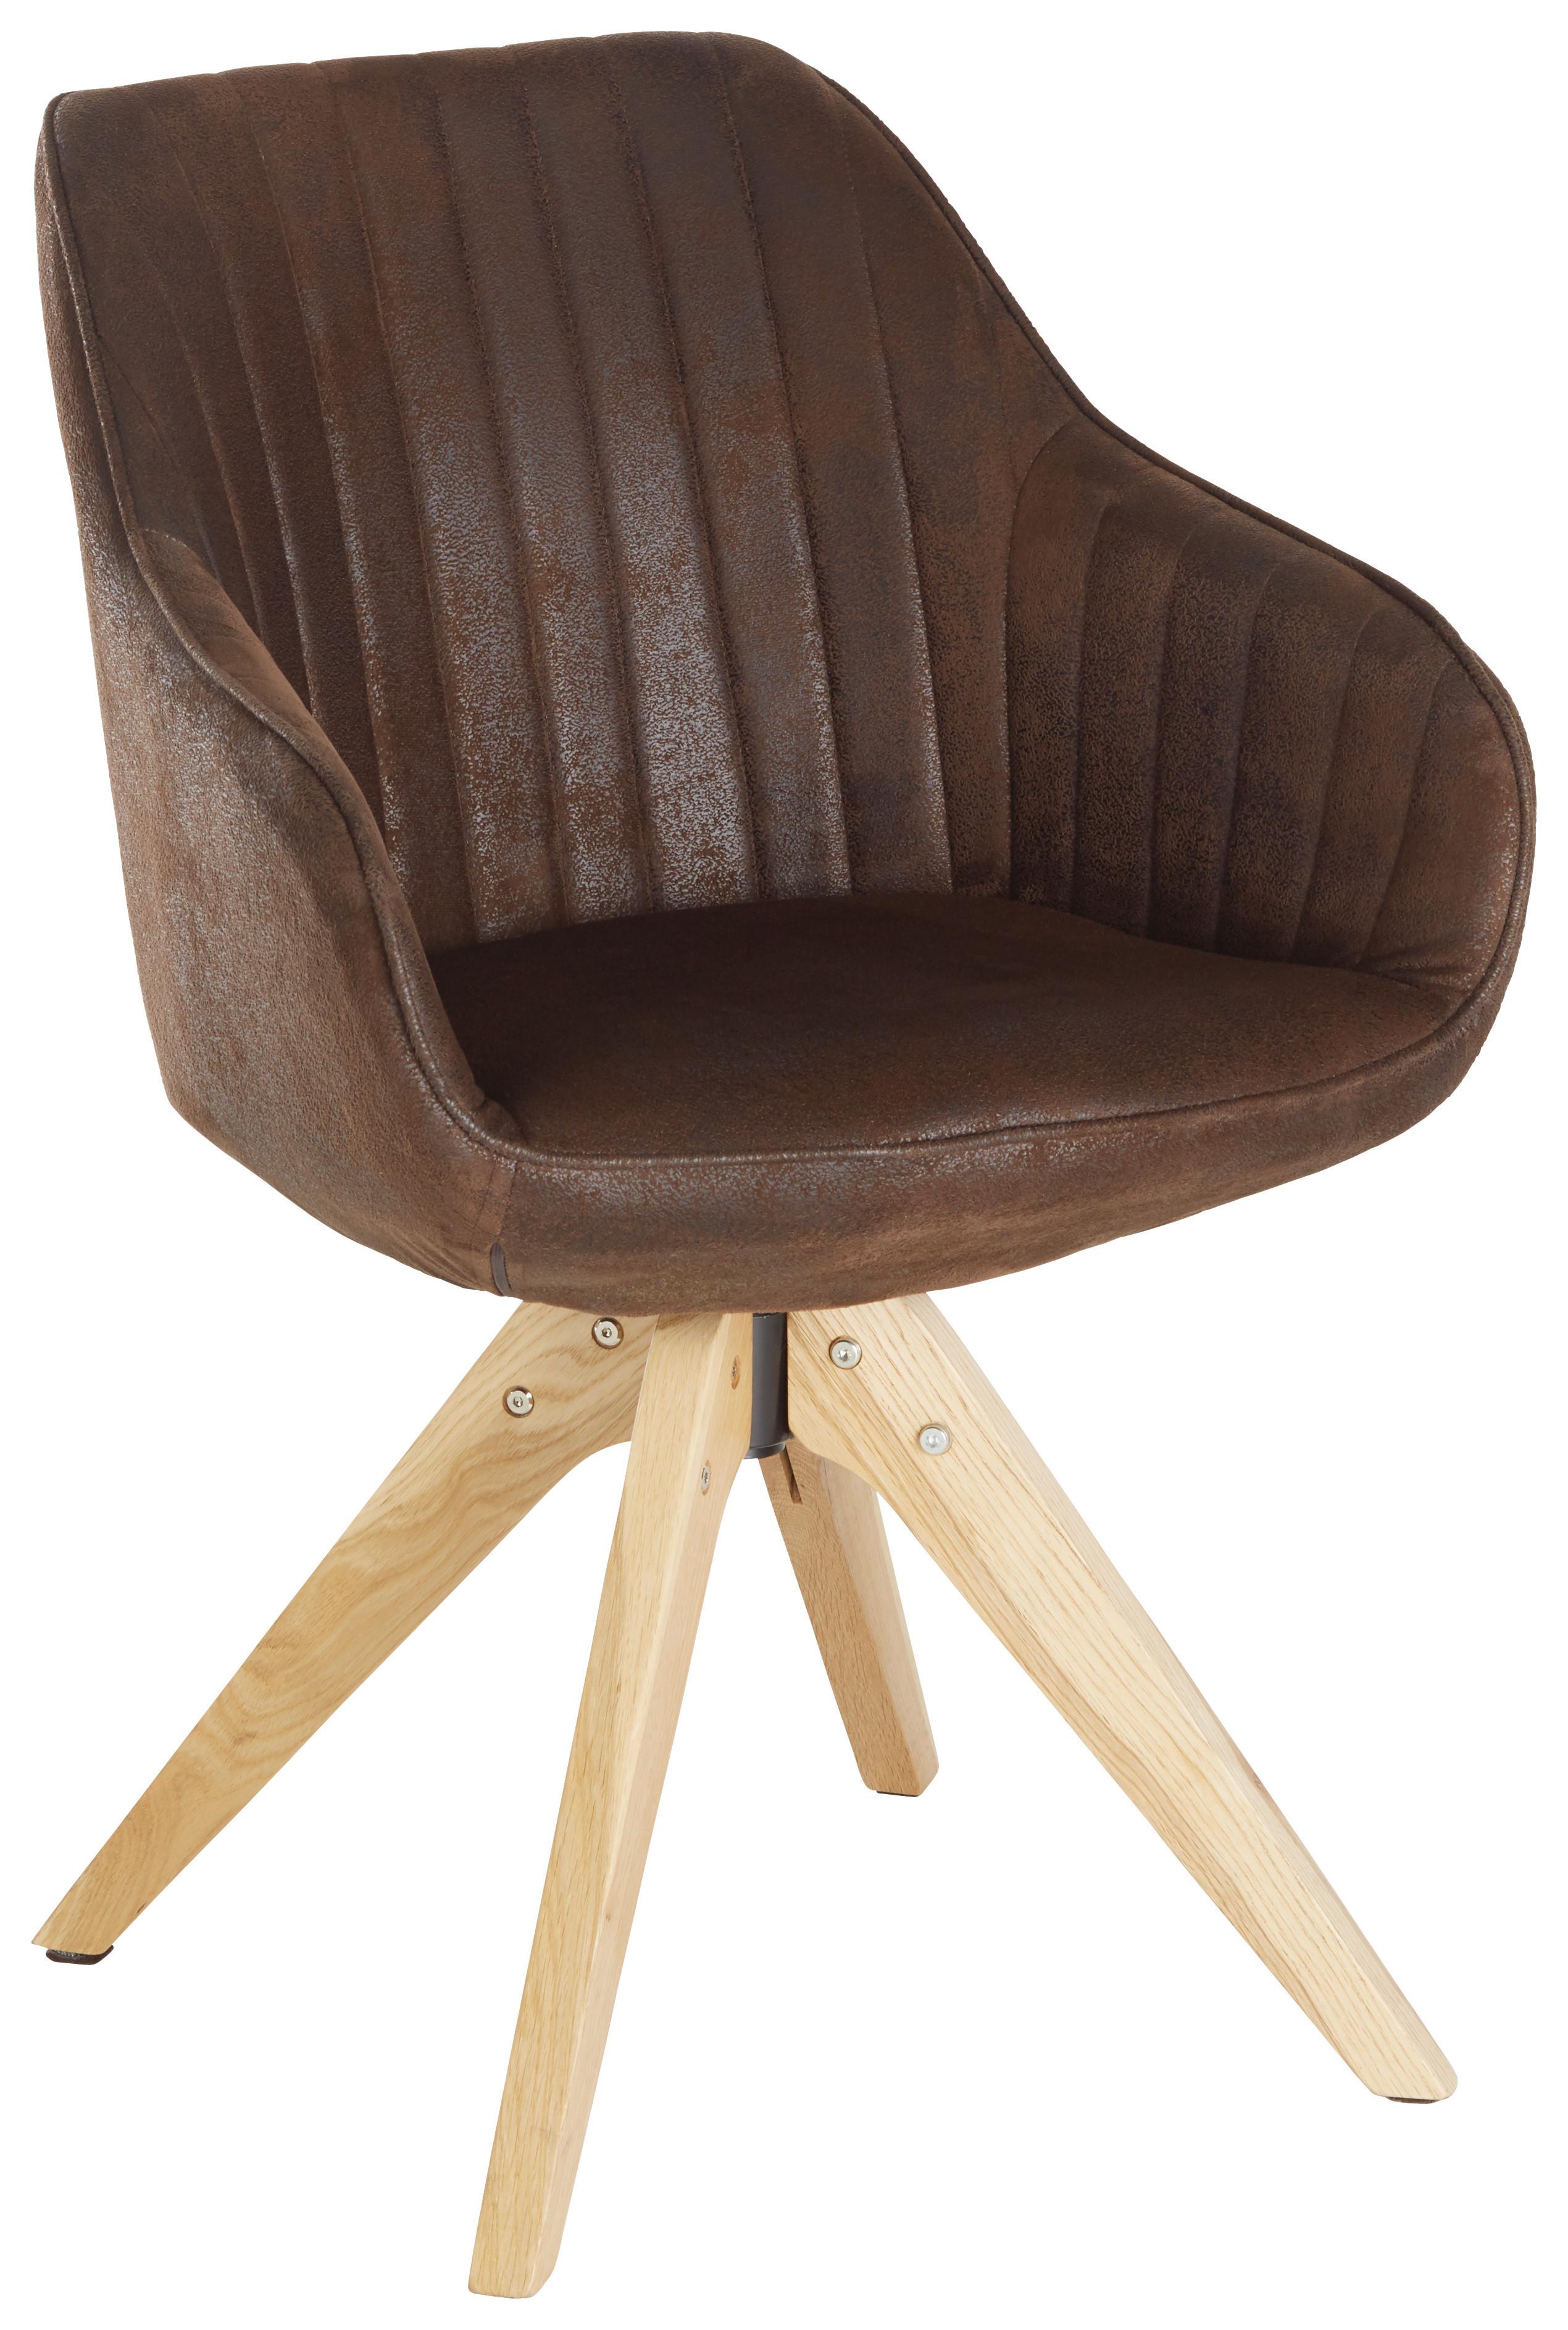 Židle S Područkami Chill -Bp- - tmavě hnědá/barvy dubu, dřevo/textil (60/83/65cm) - Modern Living